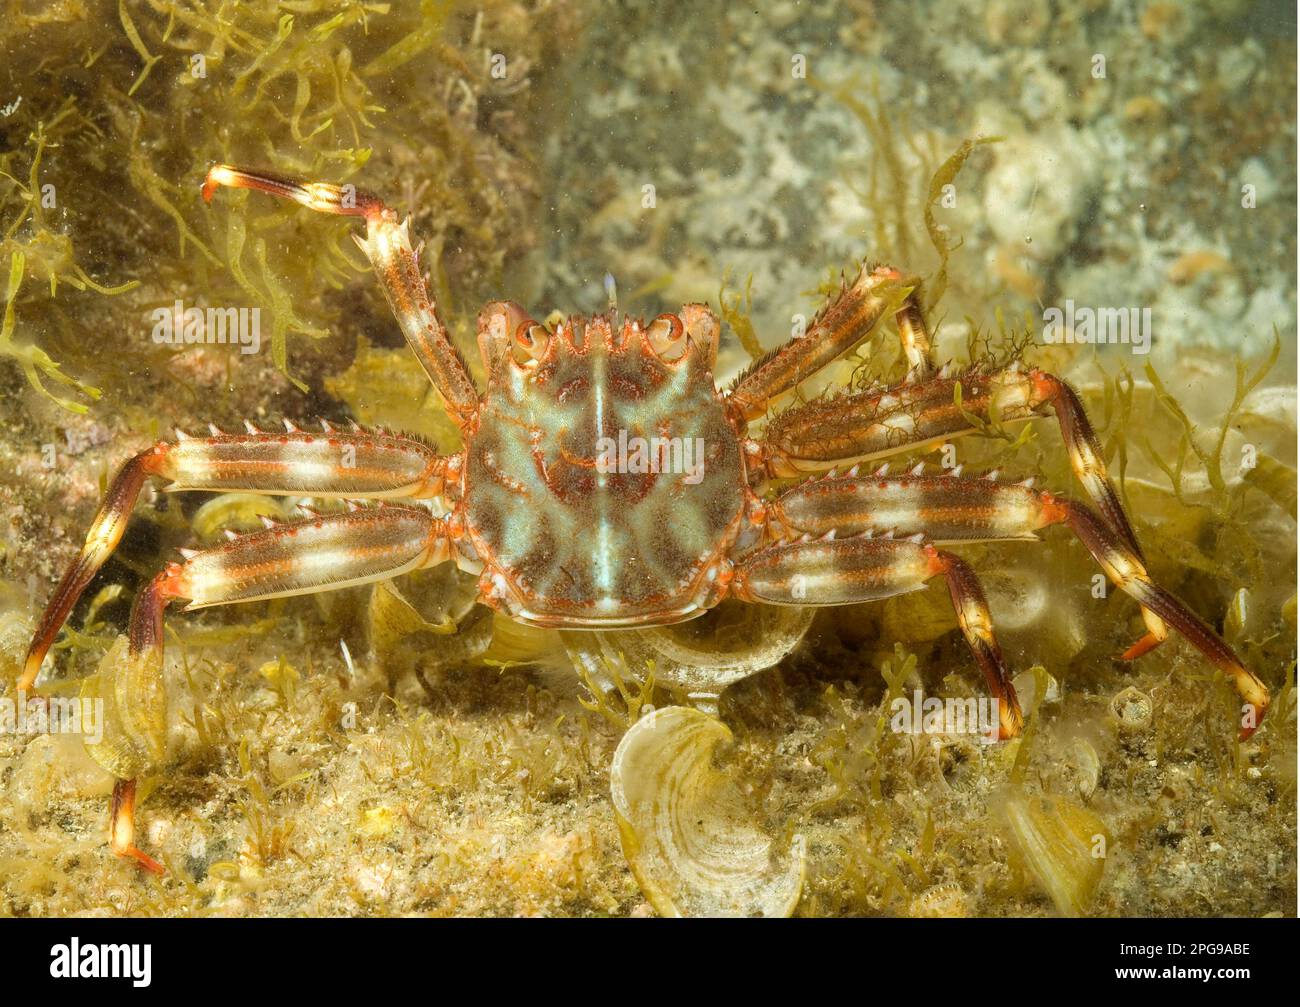 Flat crab (Percnon gibbesi). Stock Photo